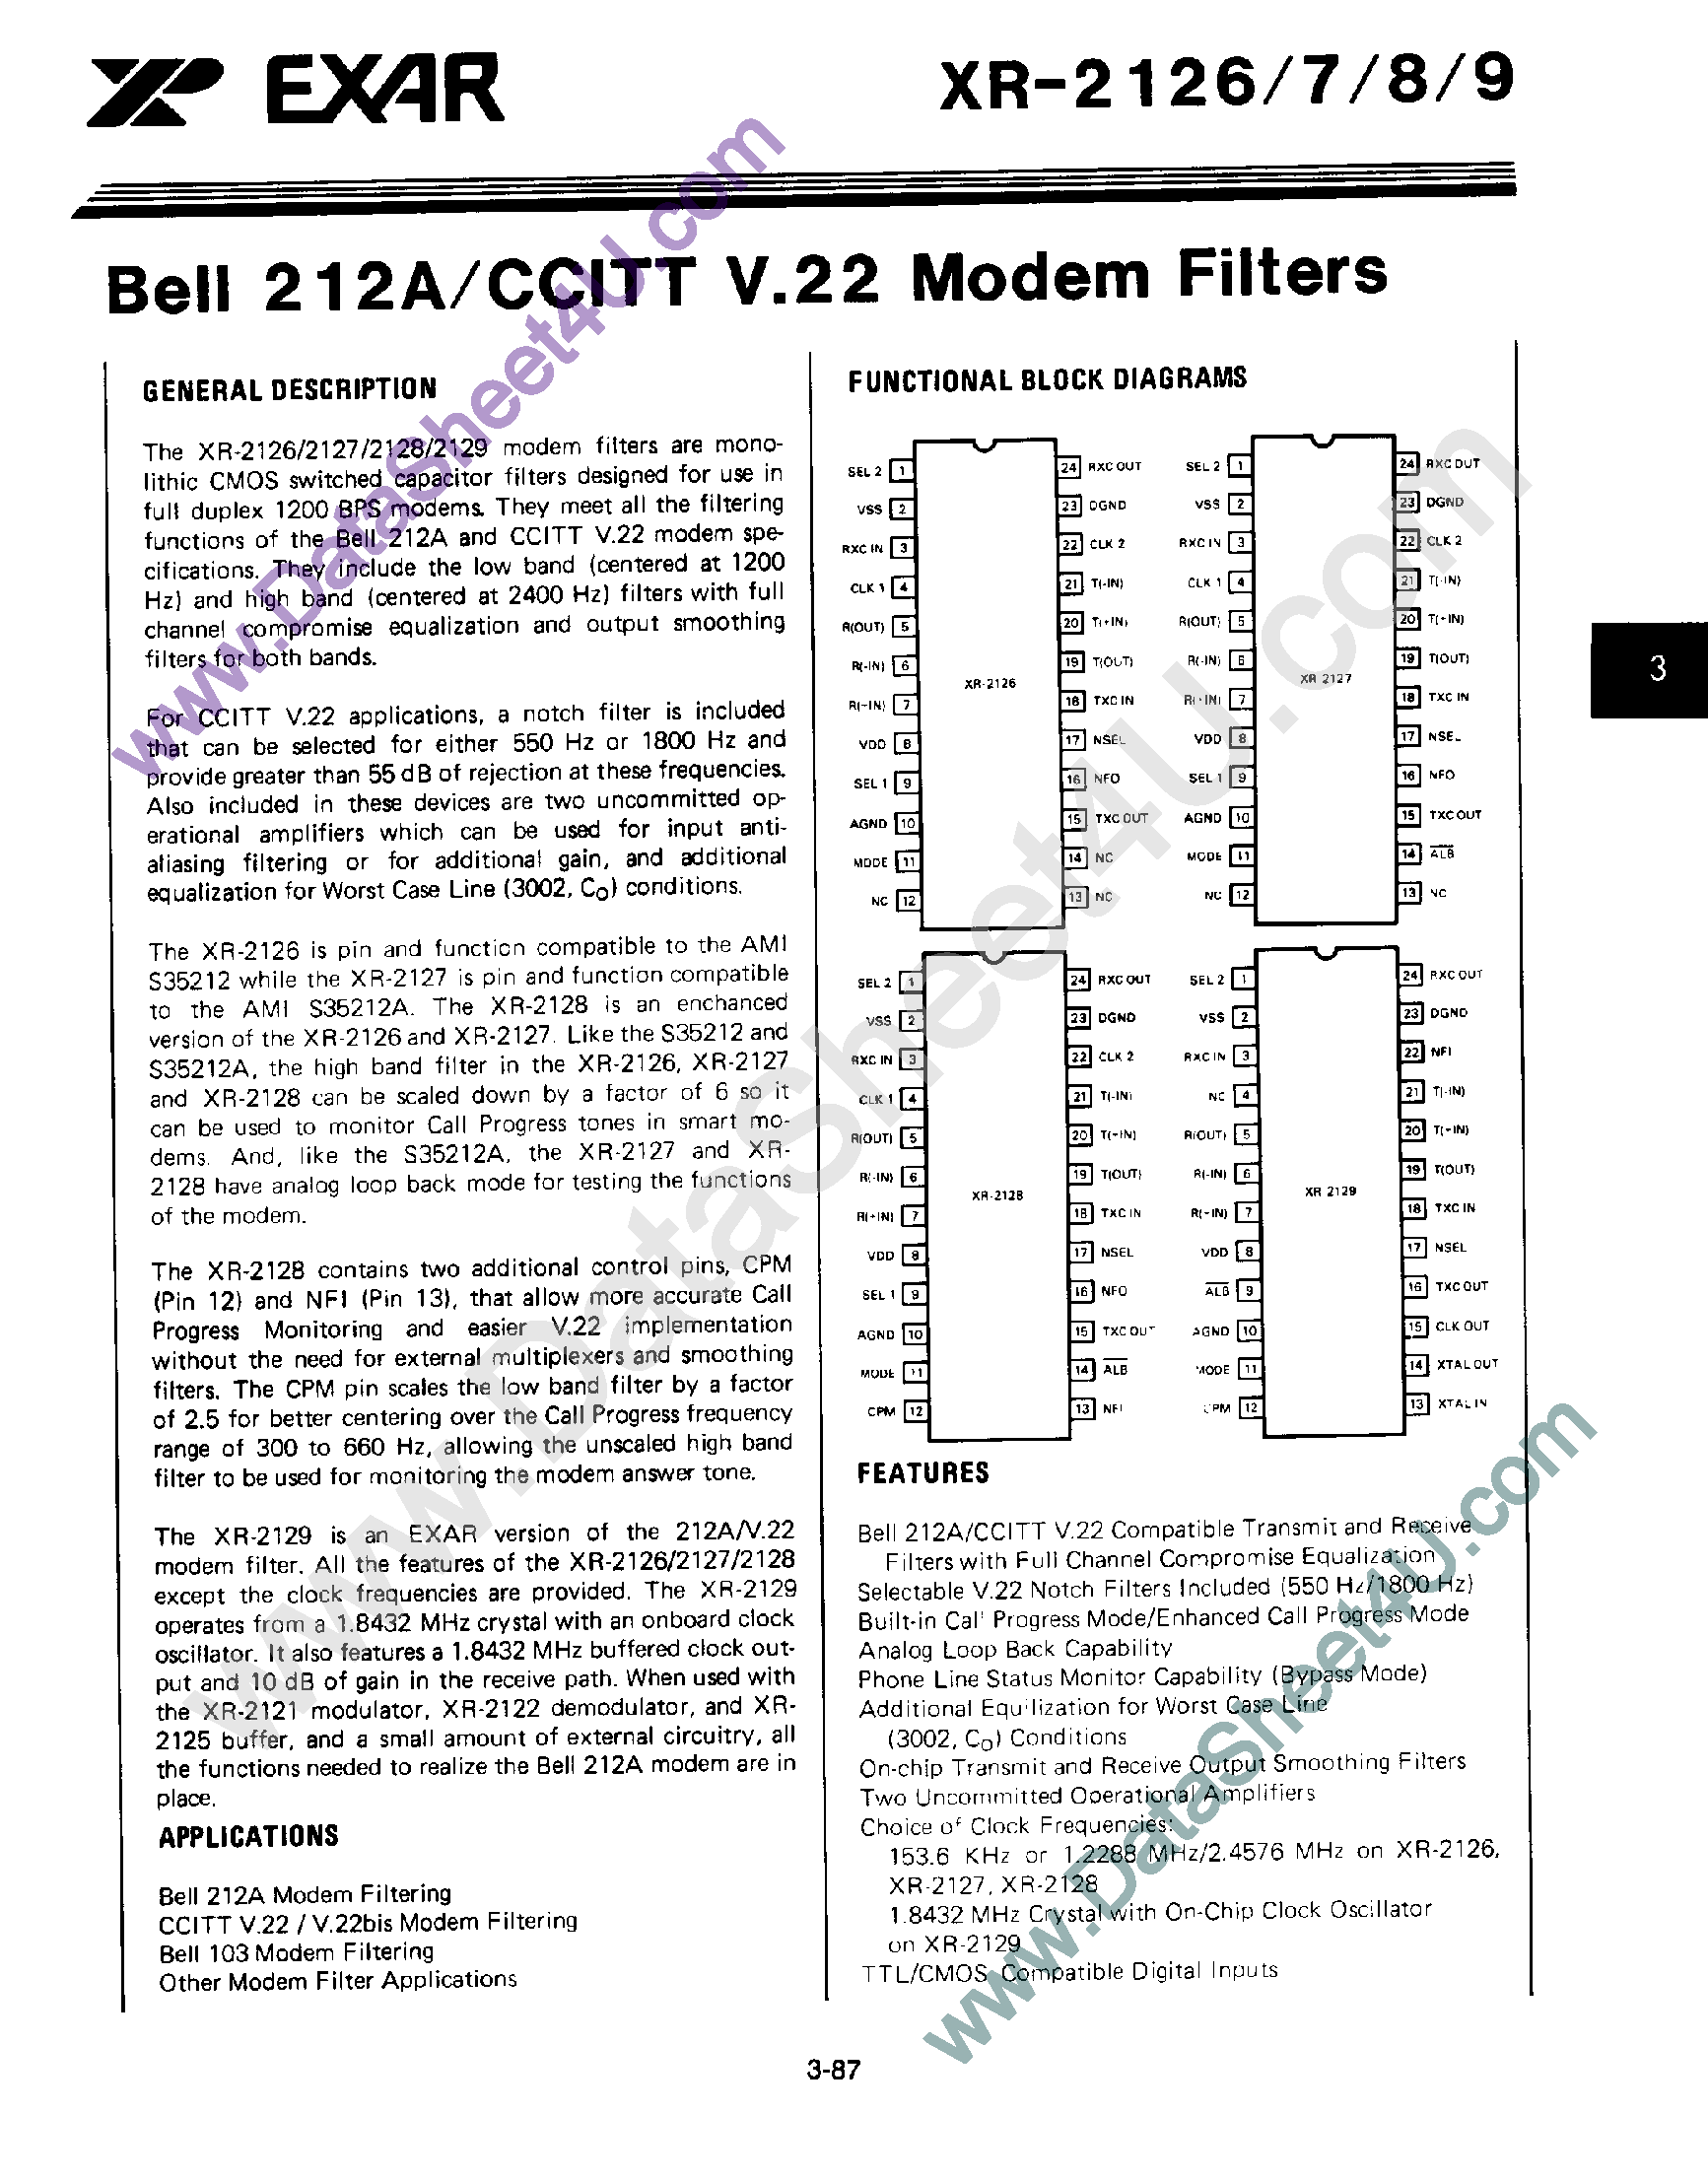 Datasheet XR-2126 - Bell 212A / CCITT V.22 Modem Filters page 1